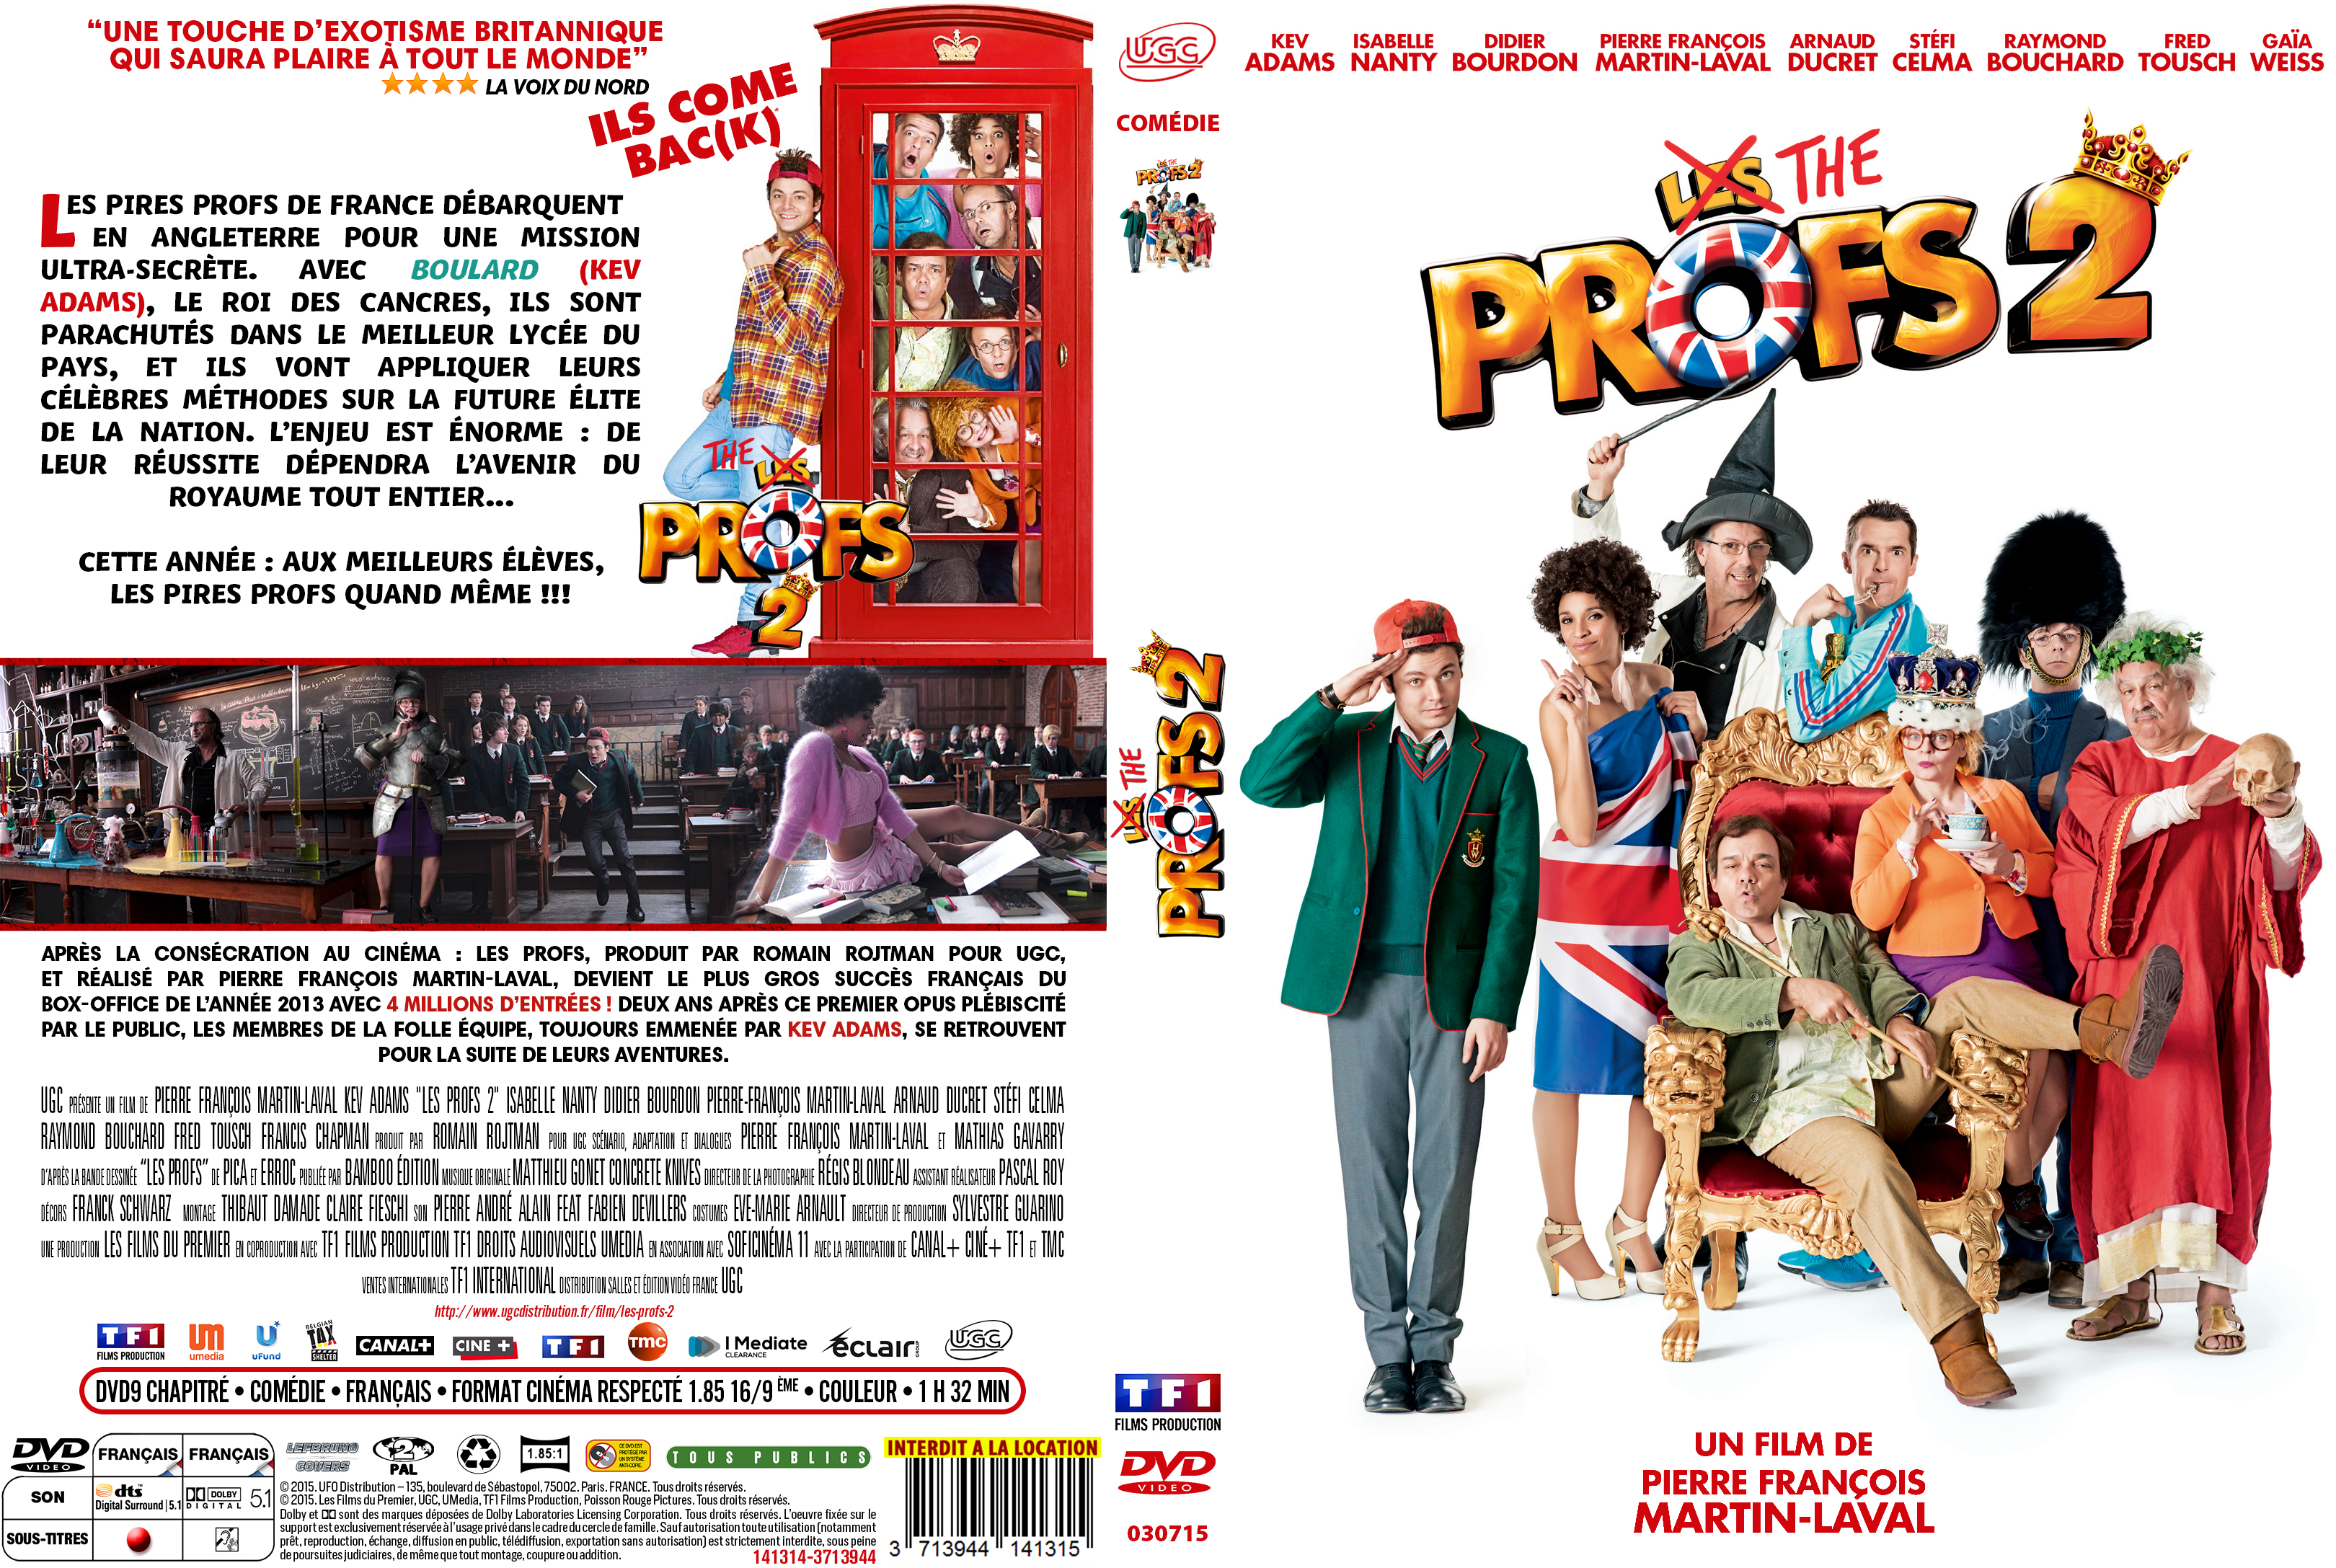 Jaquette DVD de RIPD 2 custom - Cinéma Passion